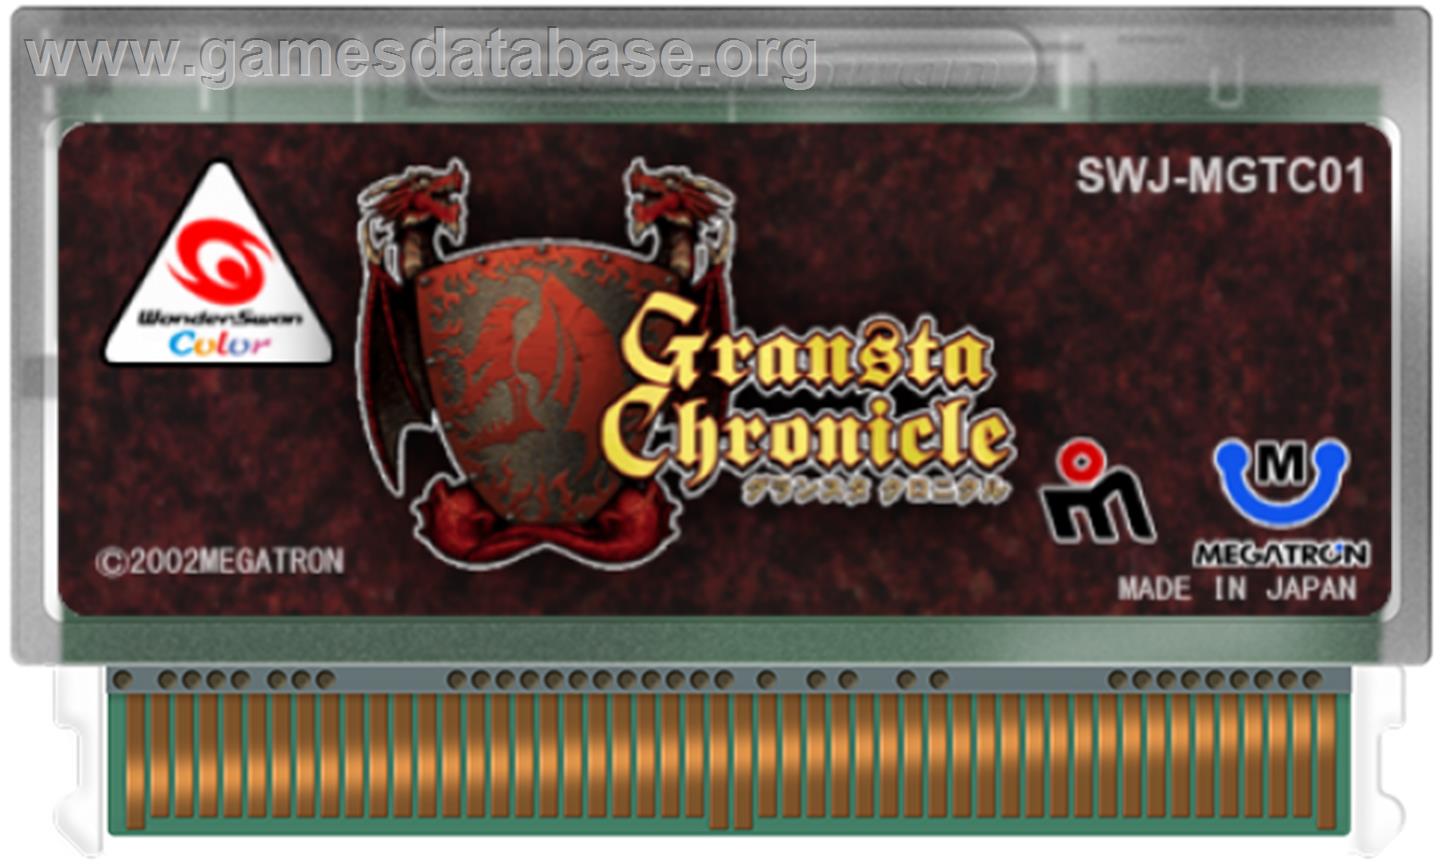 Gransta Chronicle - Bandai WonderSwan Color - Artwork - Cartridge